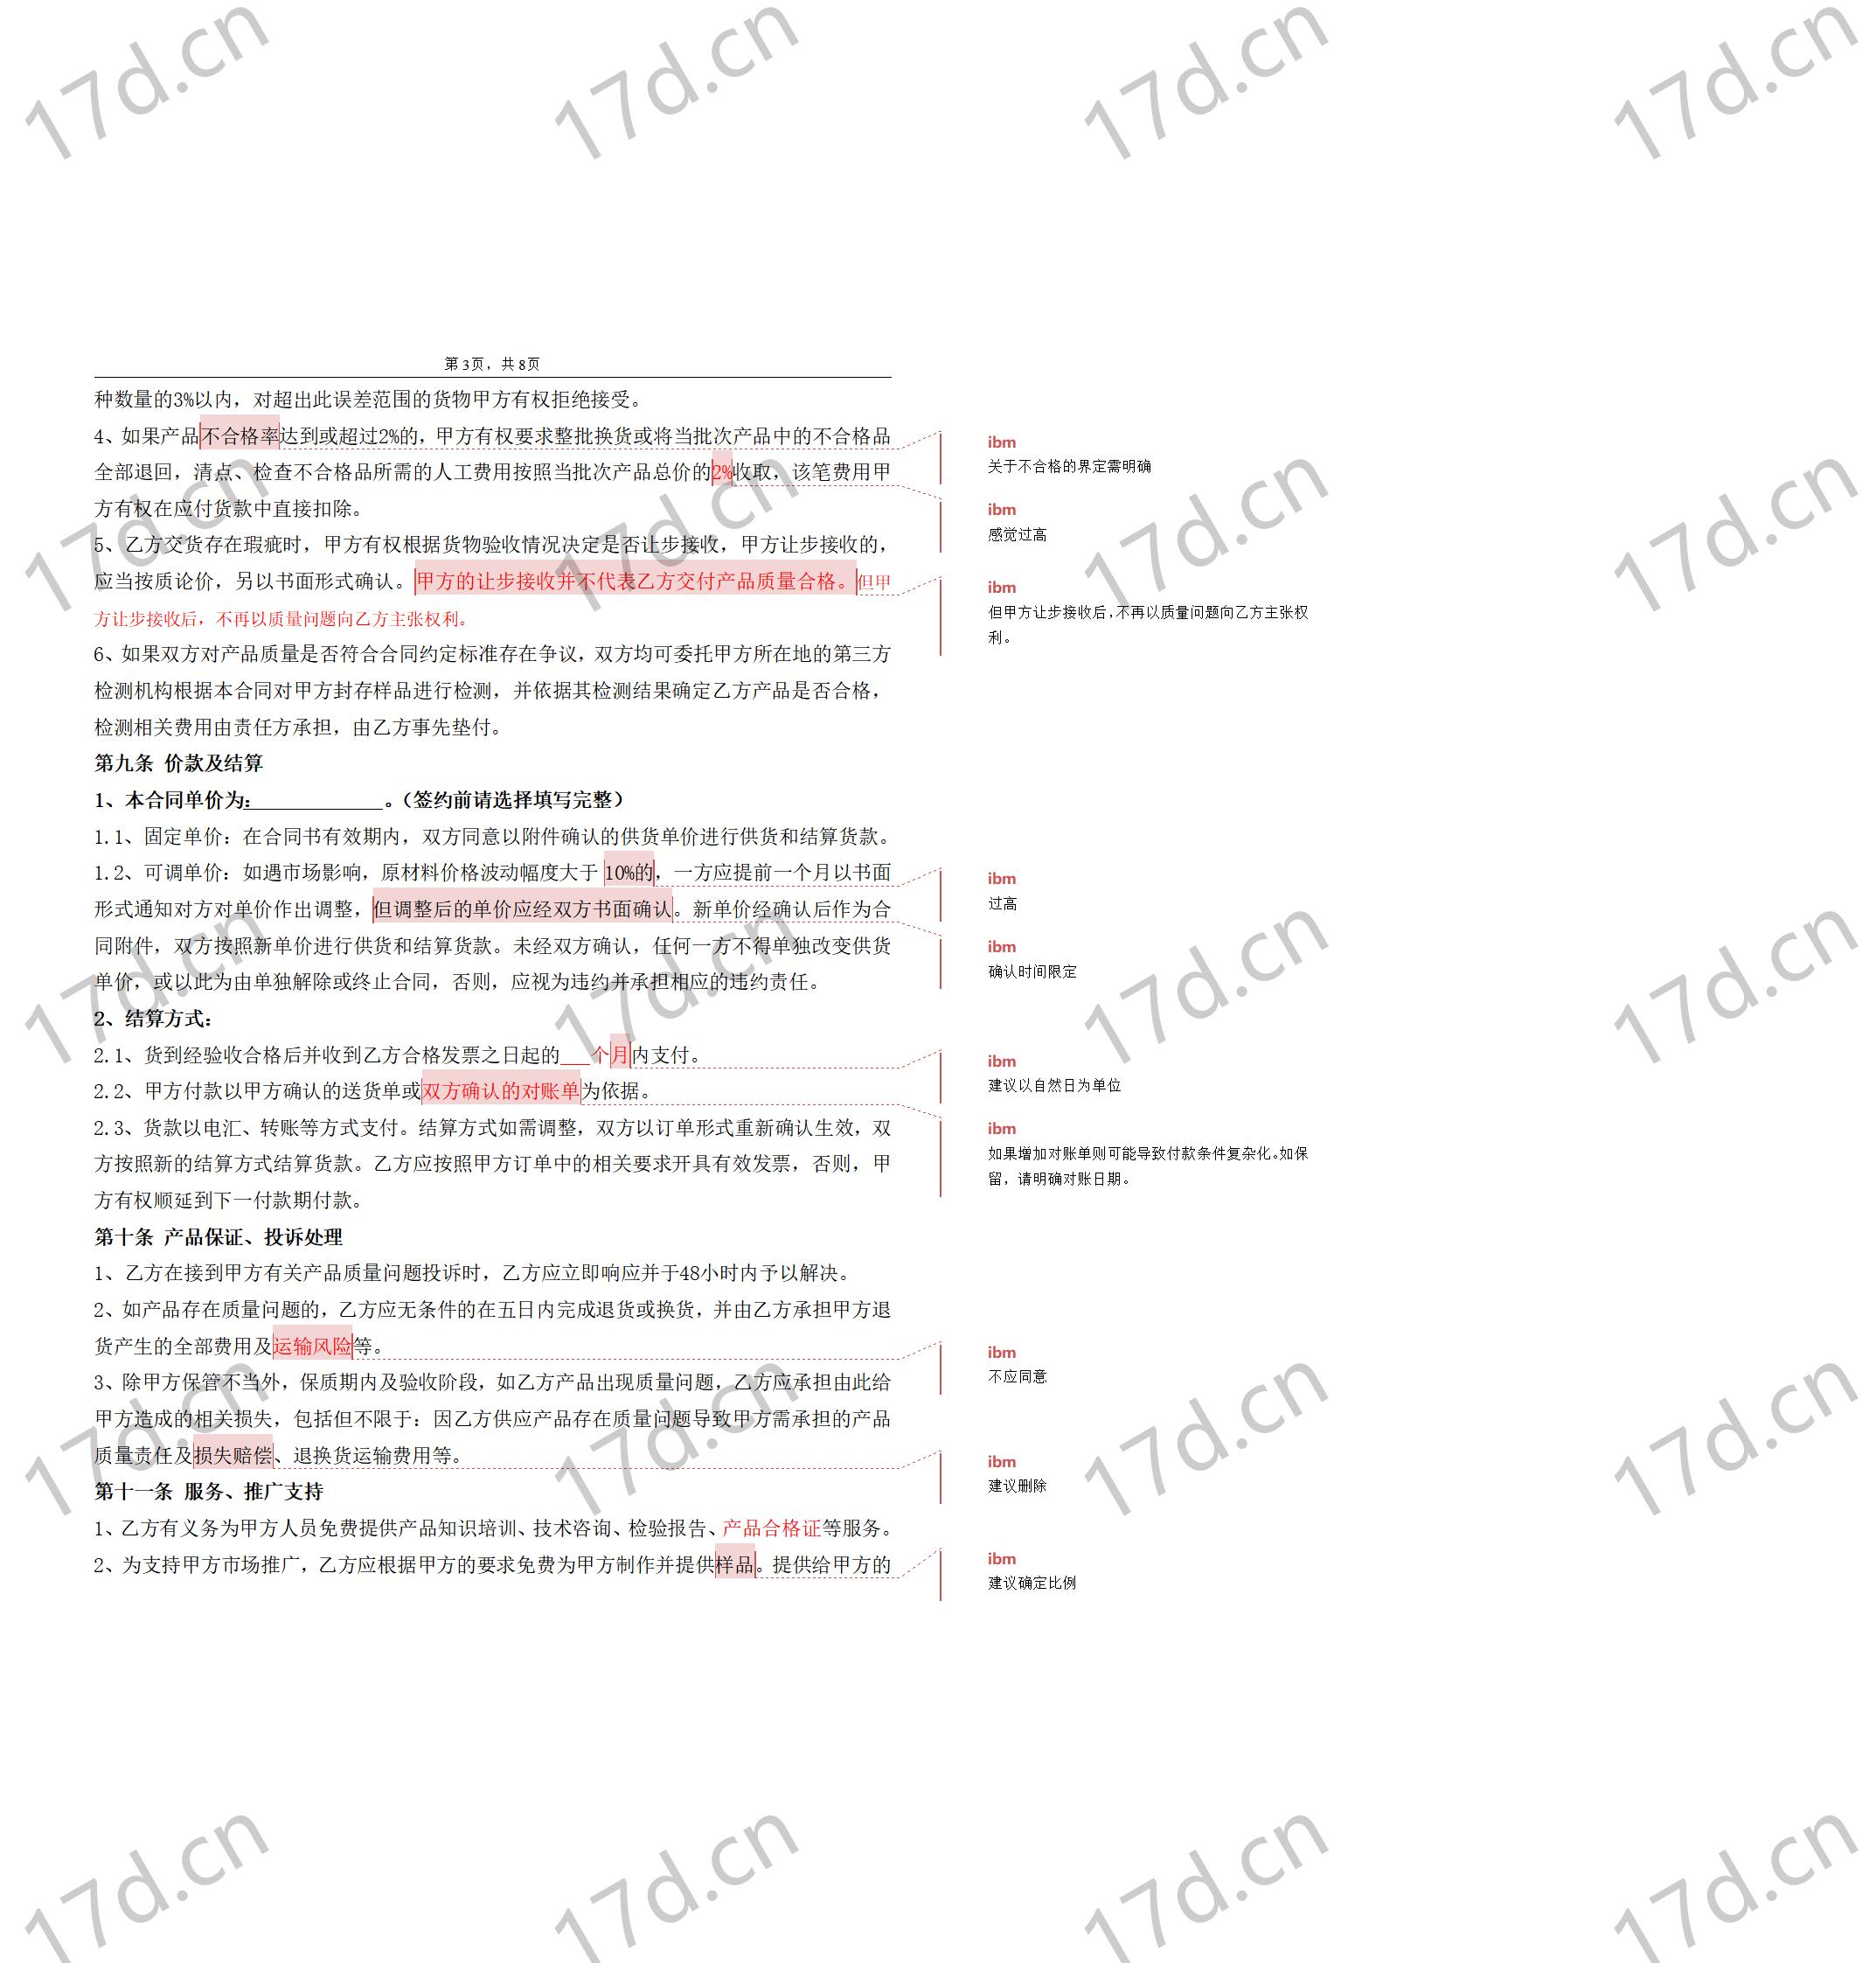 委托加工合同(OEM)2014-我方委托供应商生产加工_03.jpg